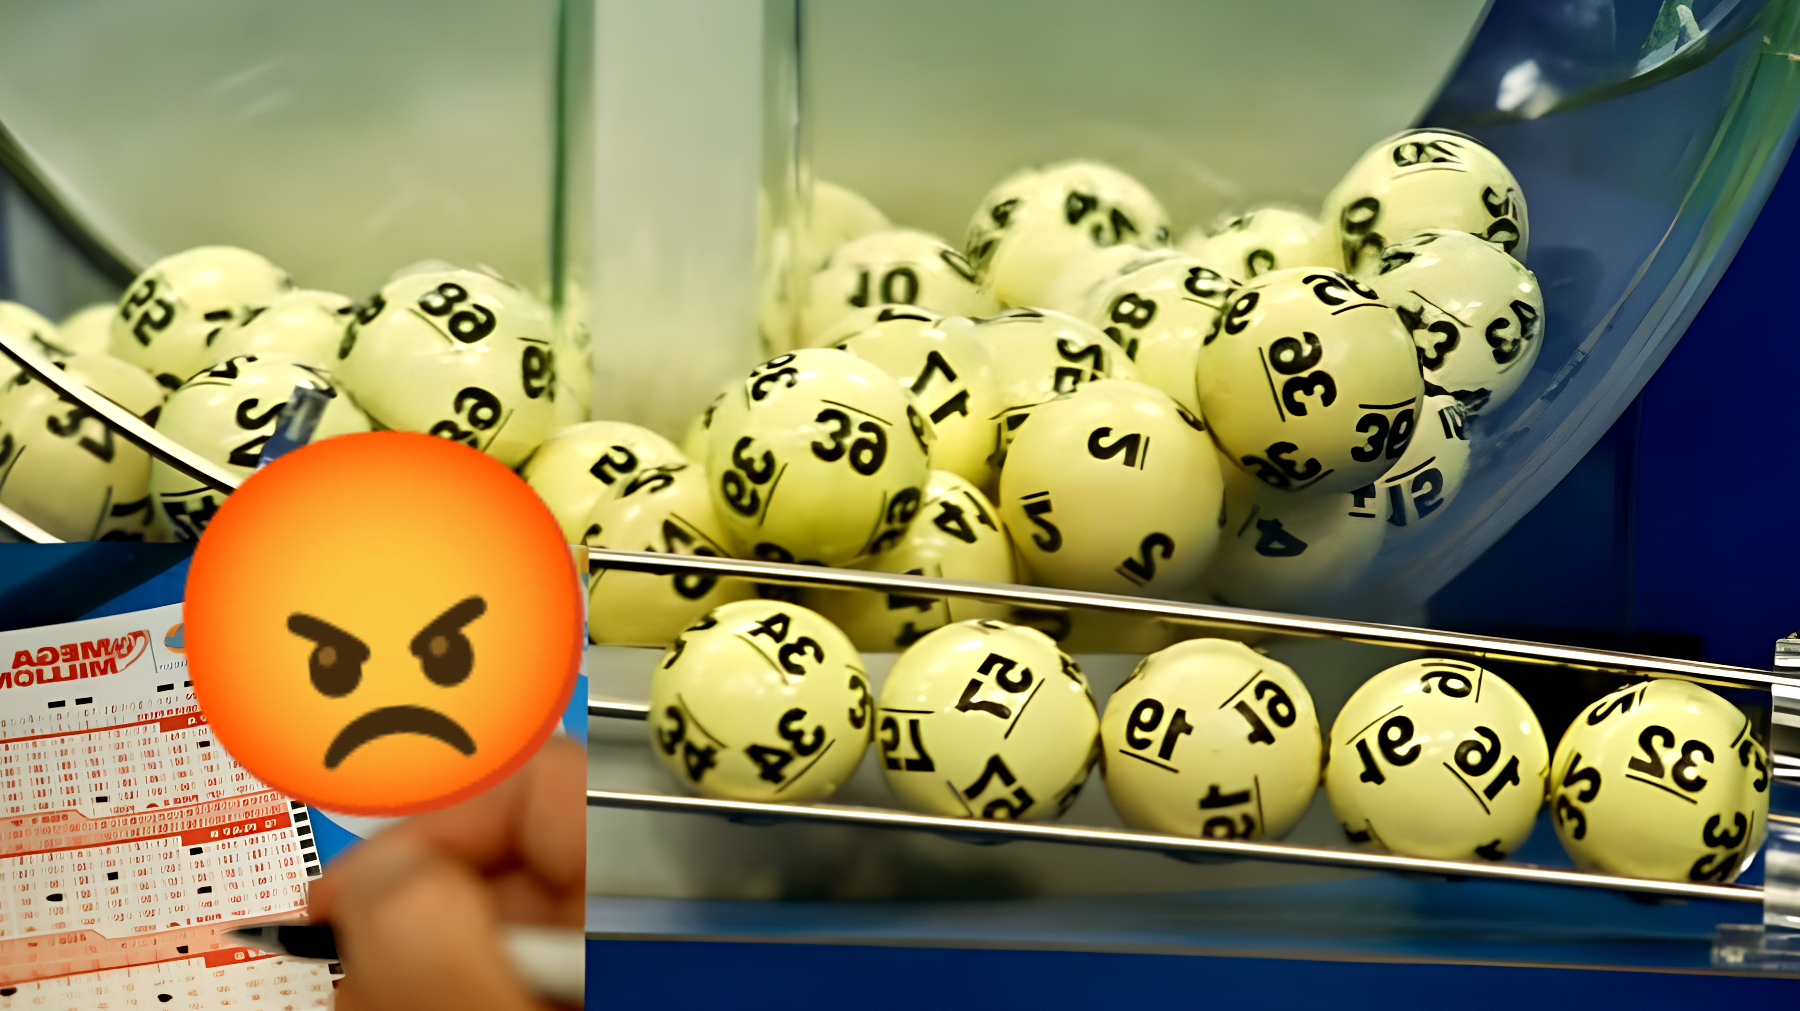 Vincitore della lotteria fa causa alla compagna: "Hai rovinato tutto!"